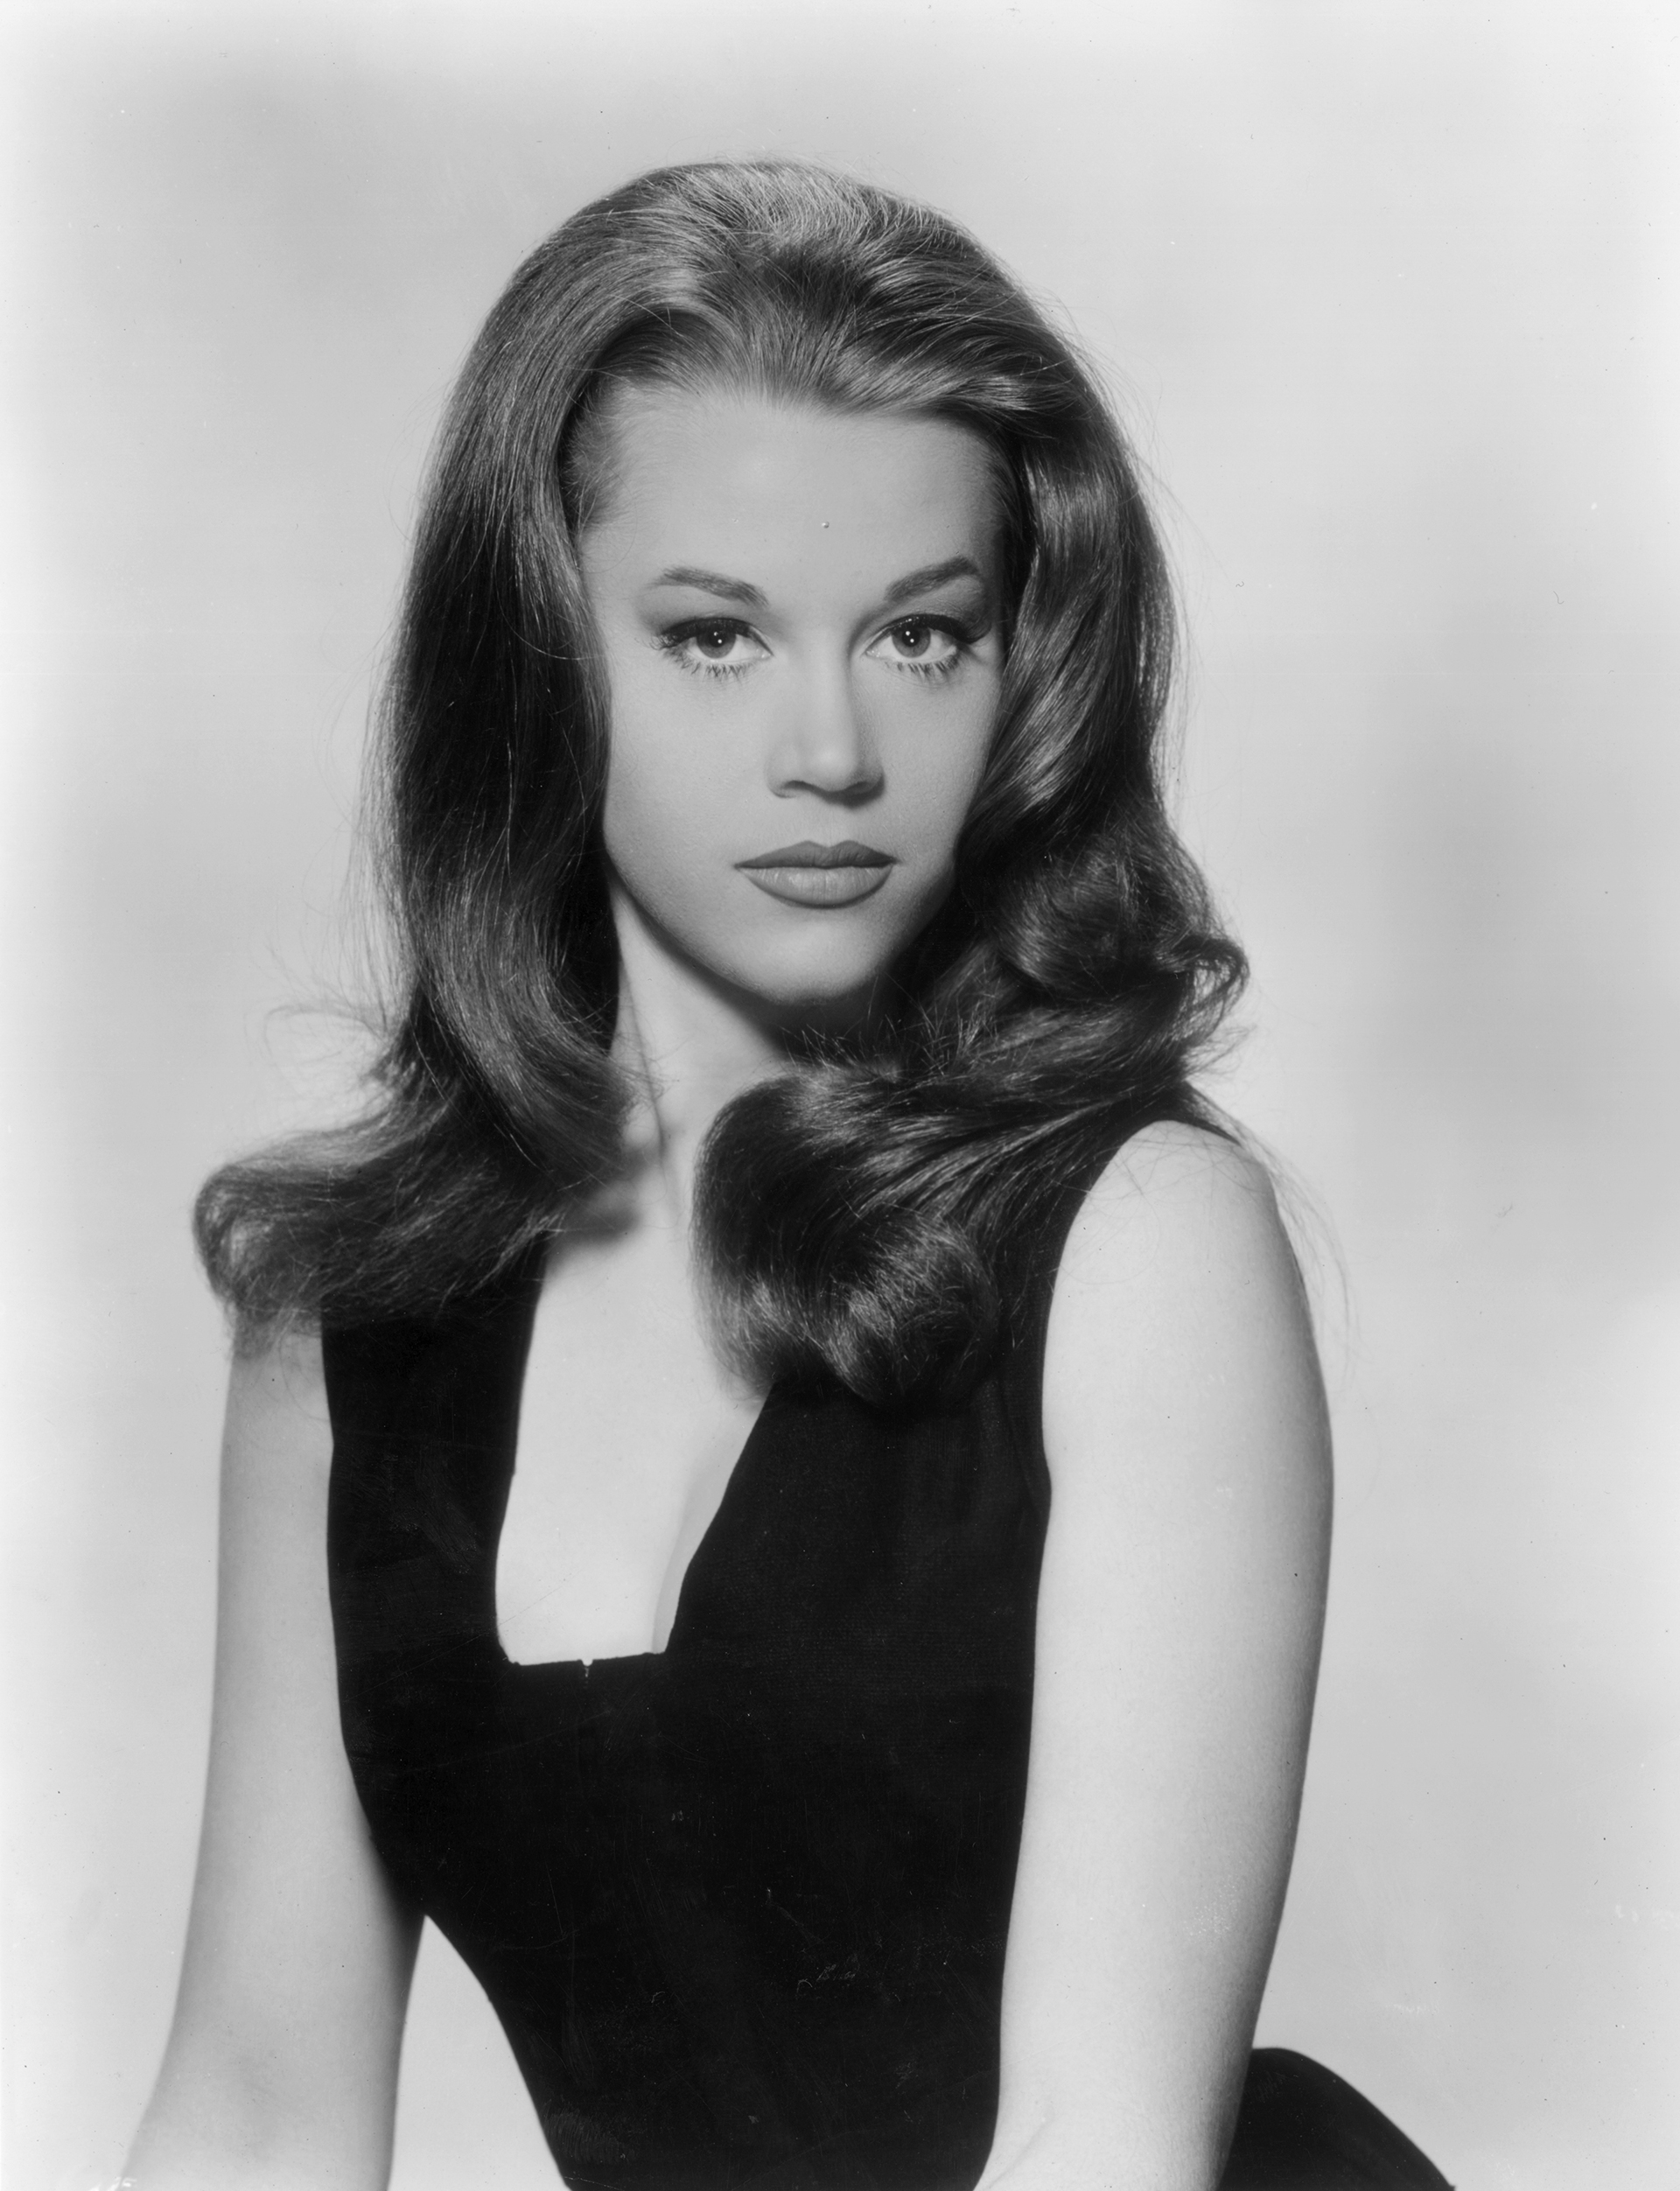 Un retrato promocional de Jane Fonda alrededor de 1960 (Photo by Hulton Archive/Getty Images)